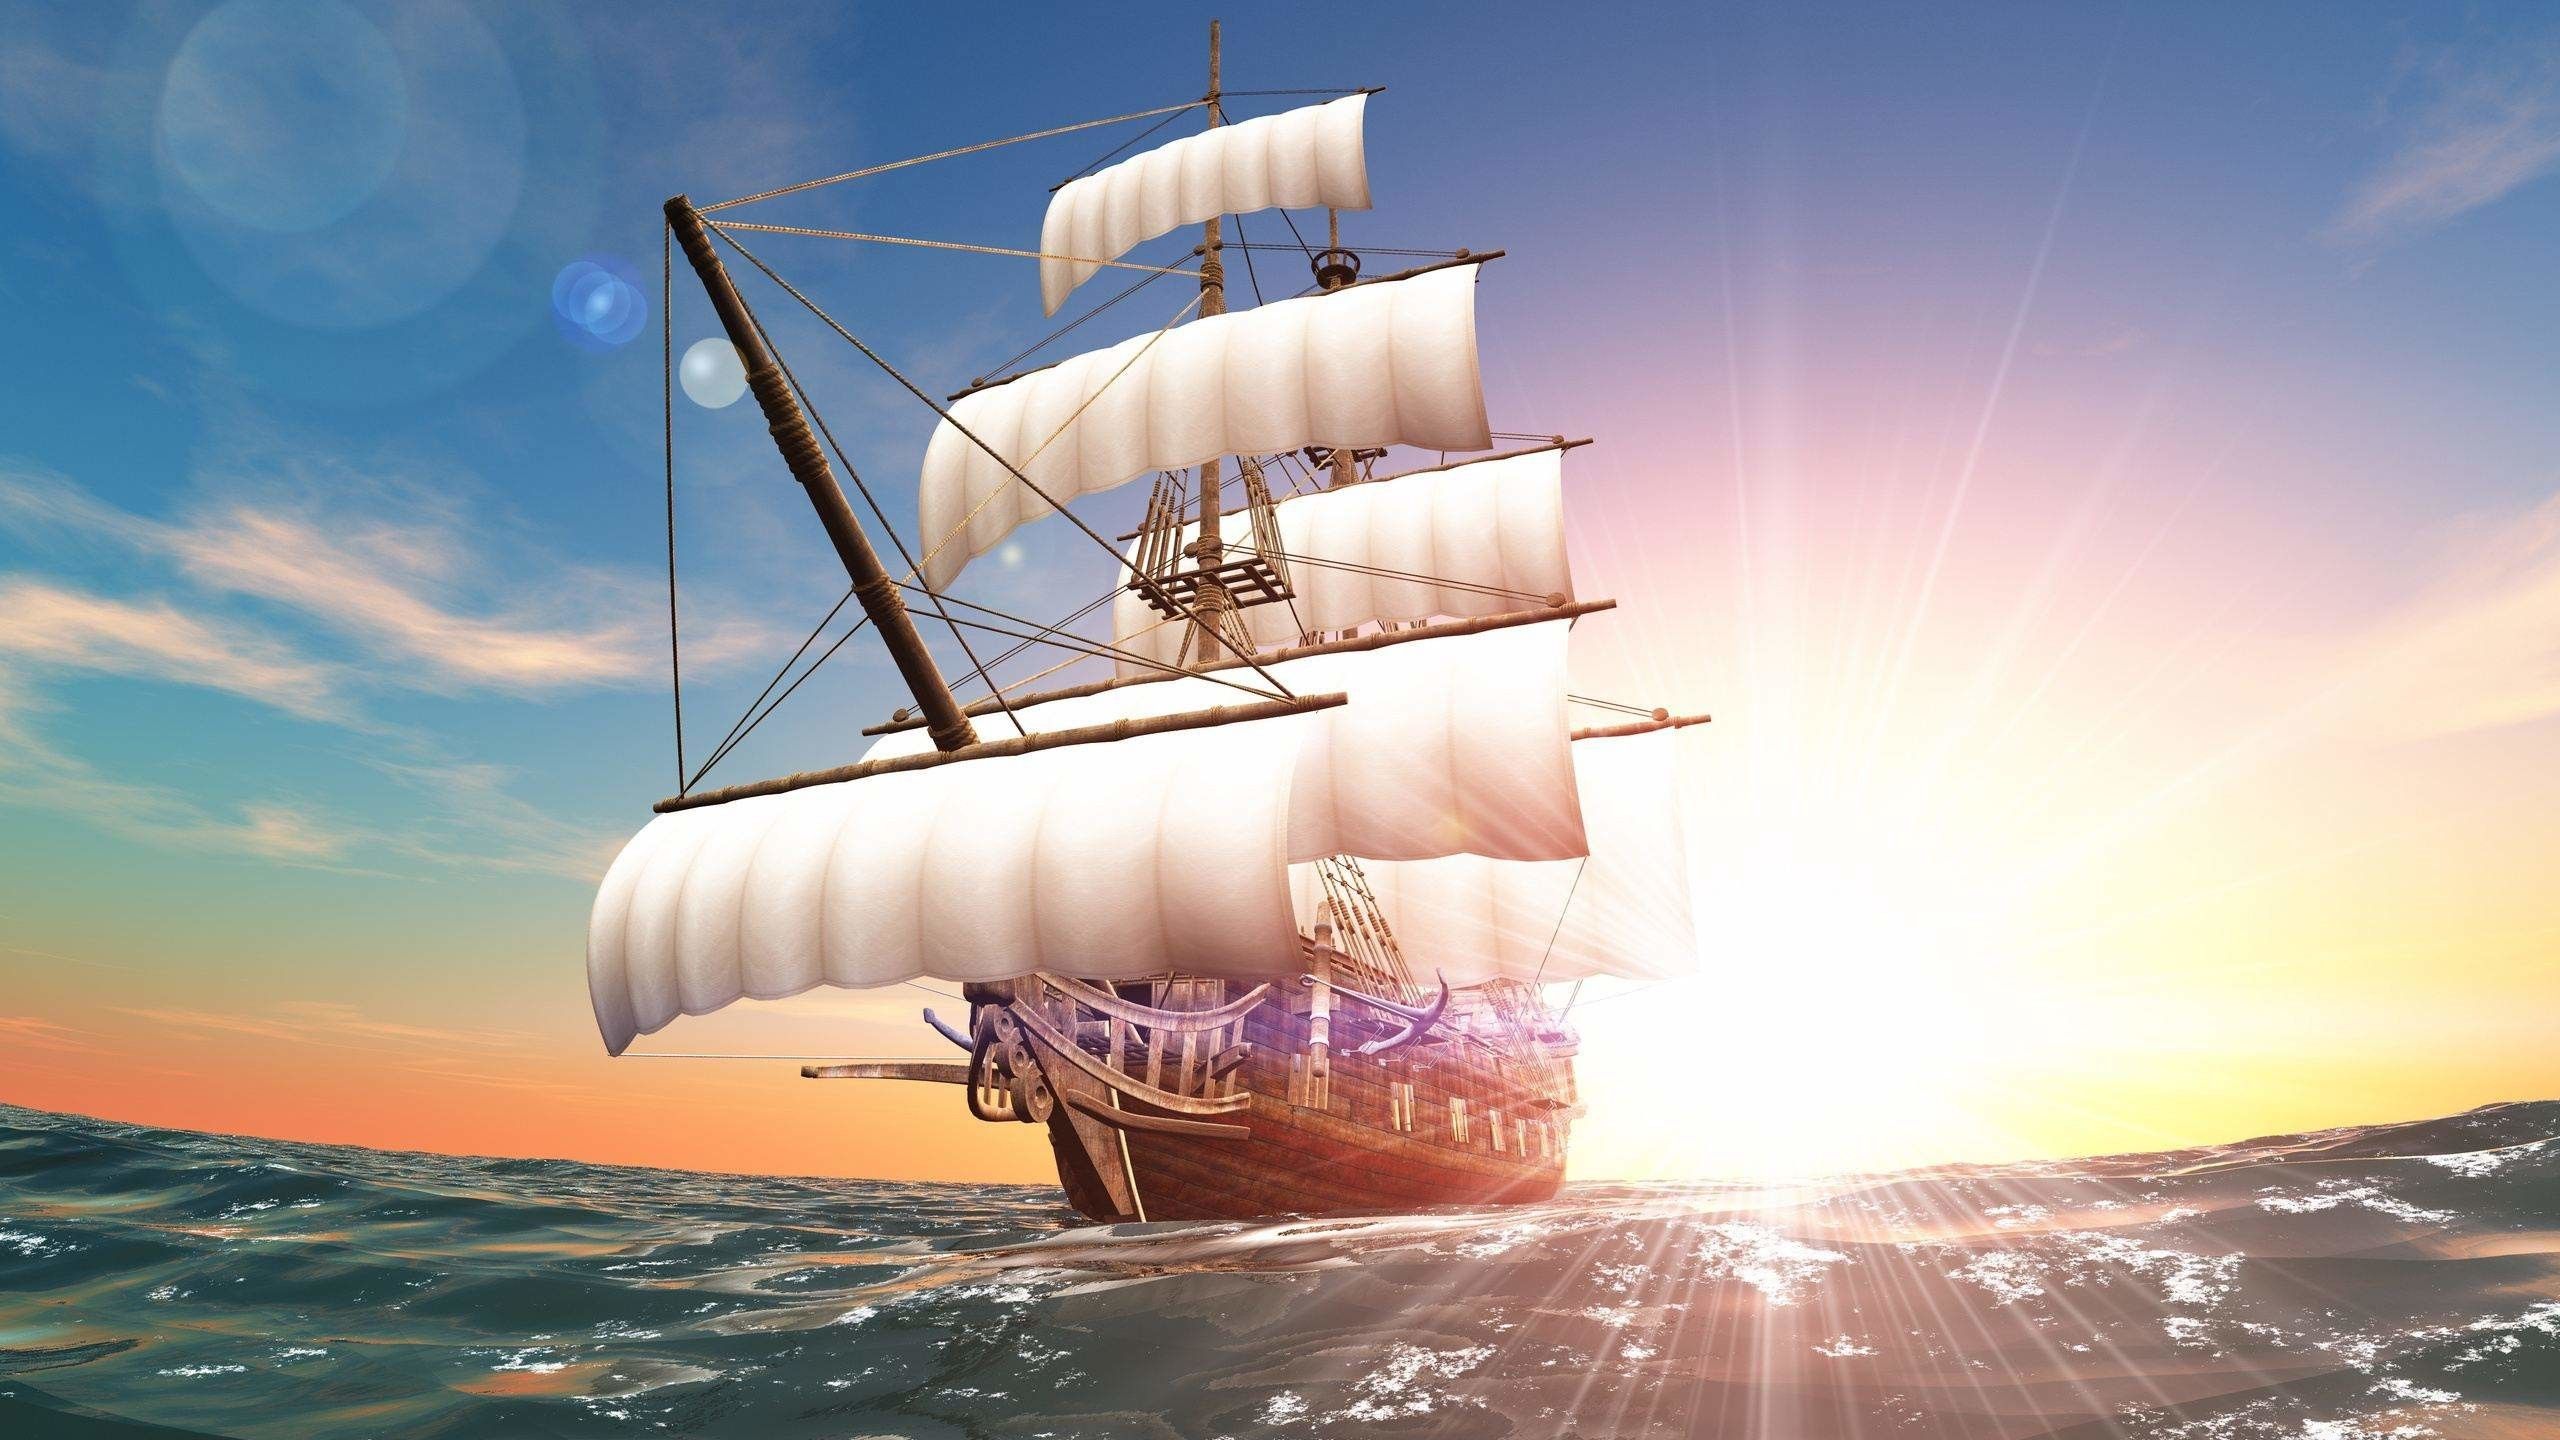 بک گراند 8k کشتی چوبی روی دریا زیر تابش خیره کننده خورشید